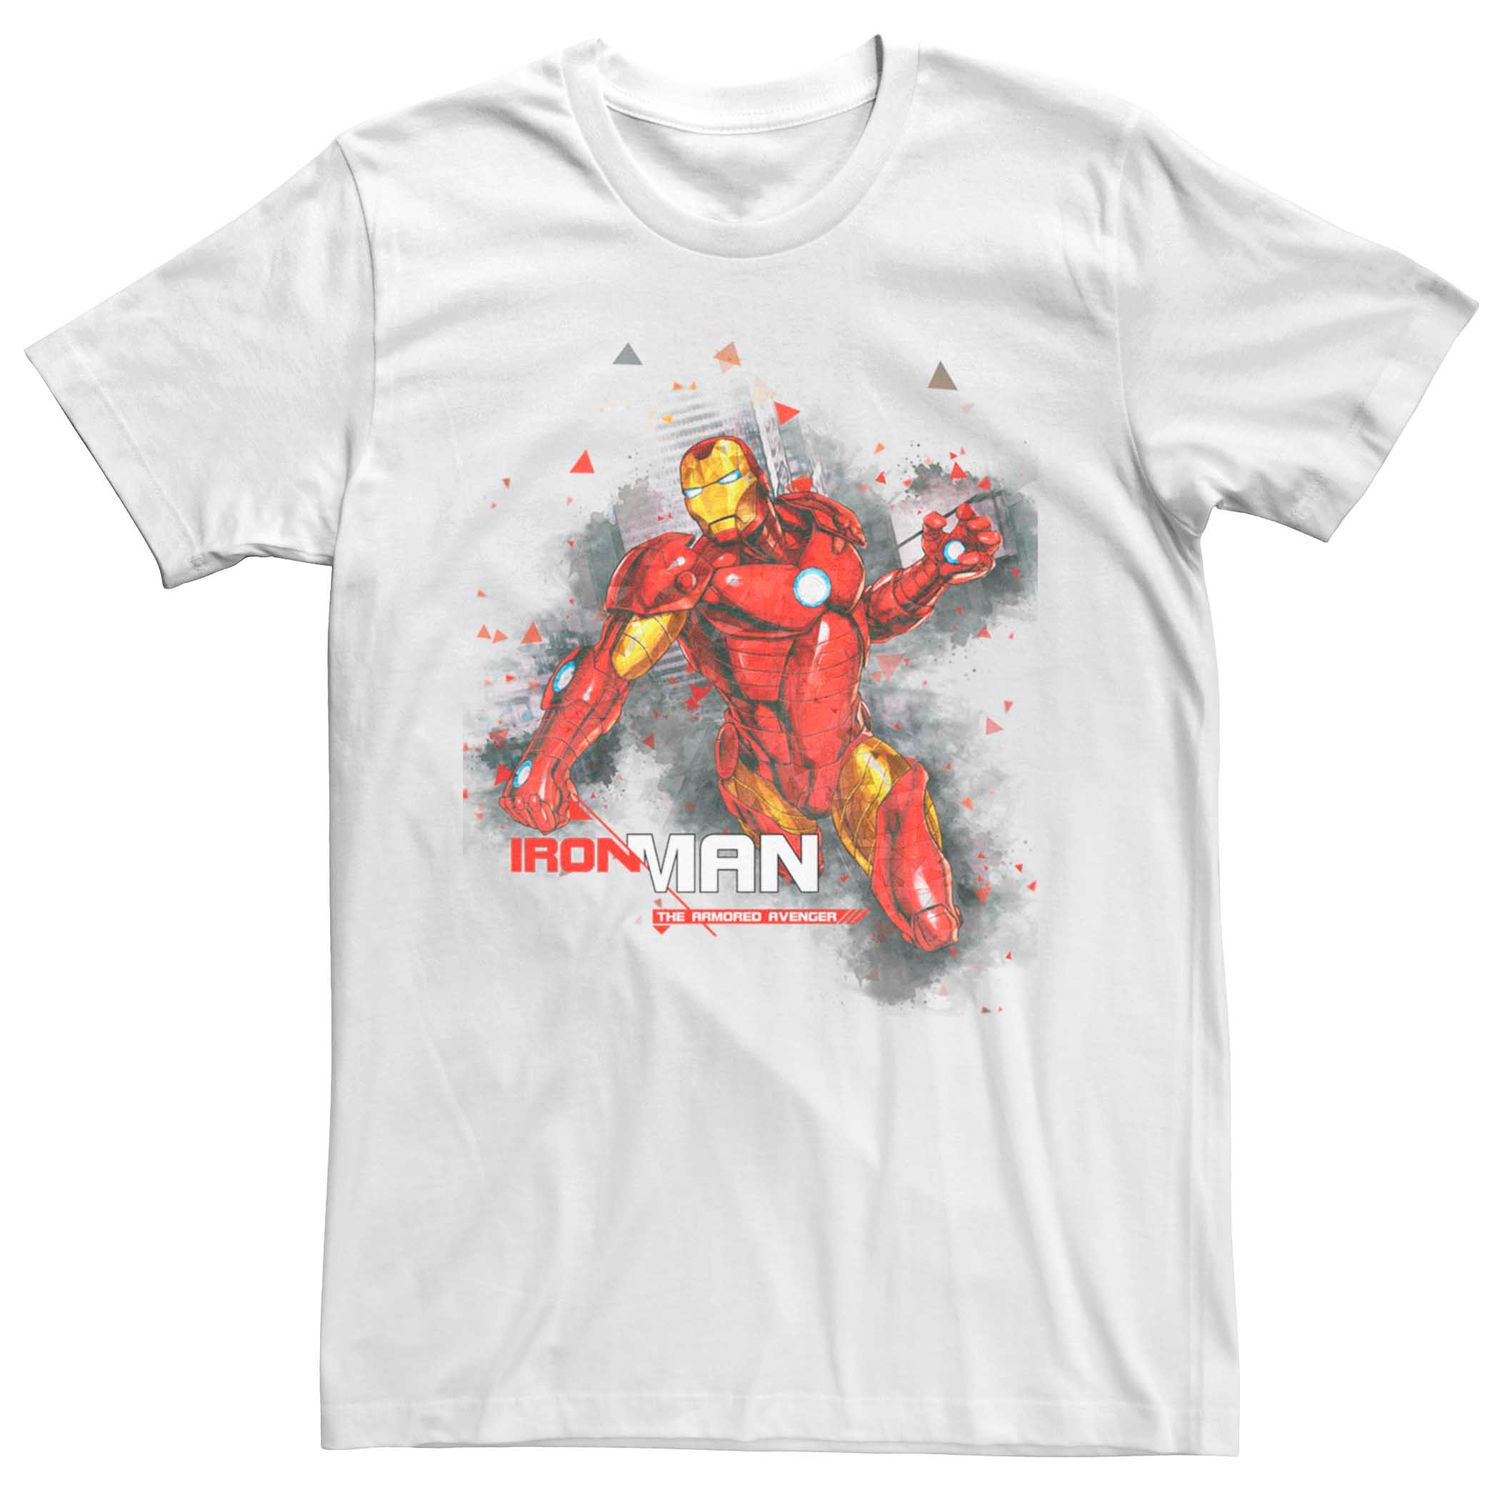 Мужская футболка с акварельными брызгами и портретом Marvel Iron Man Licensed Character мужская футболка marvel iron man arc reactor heart с портретом licensed character